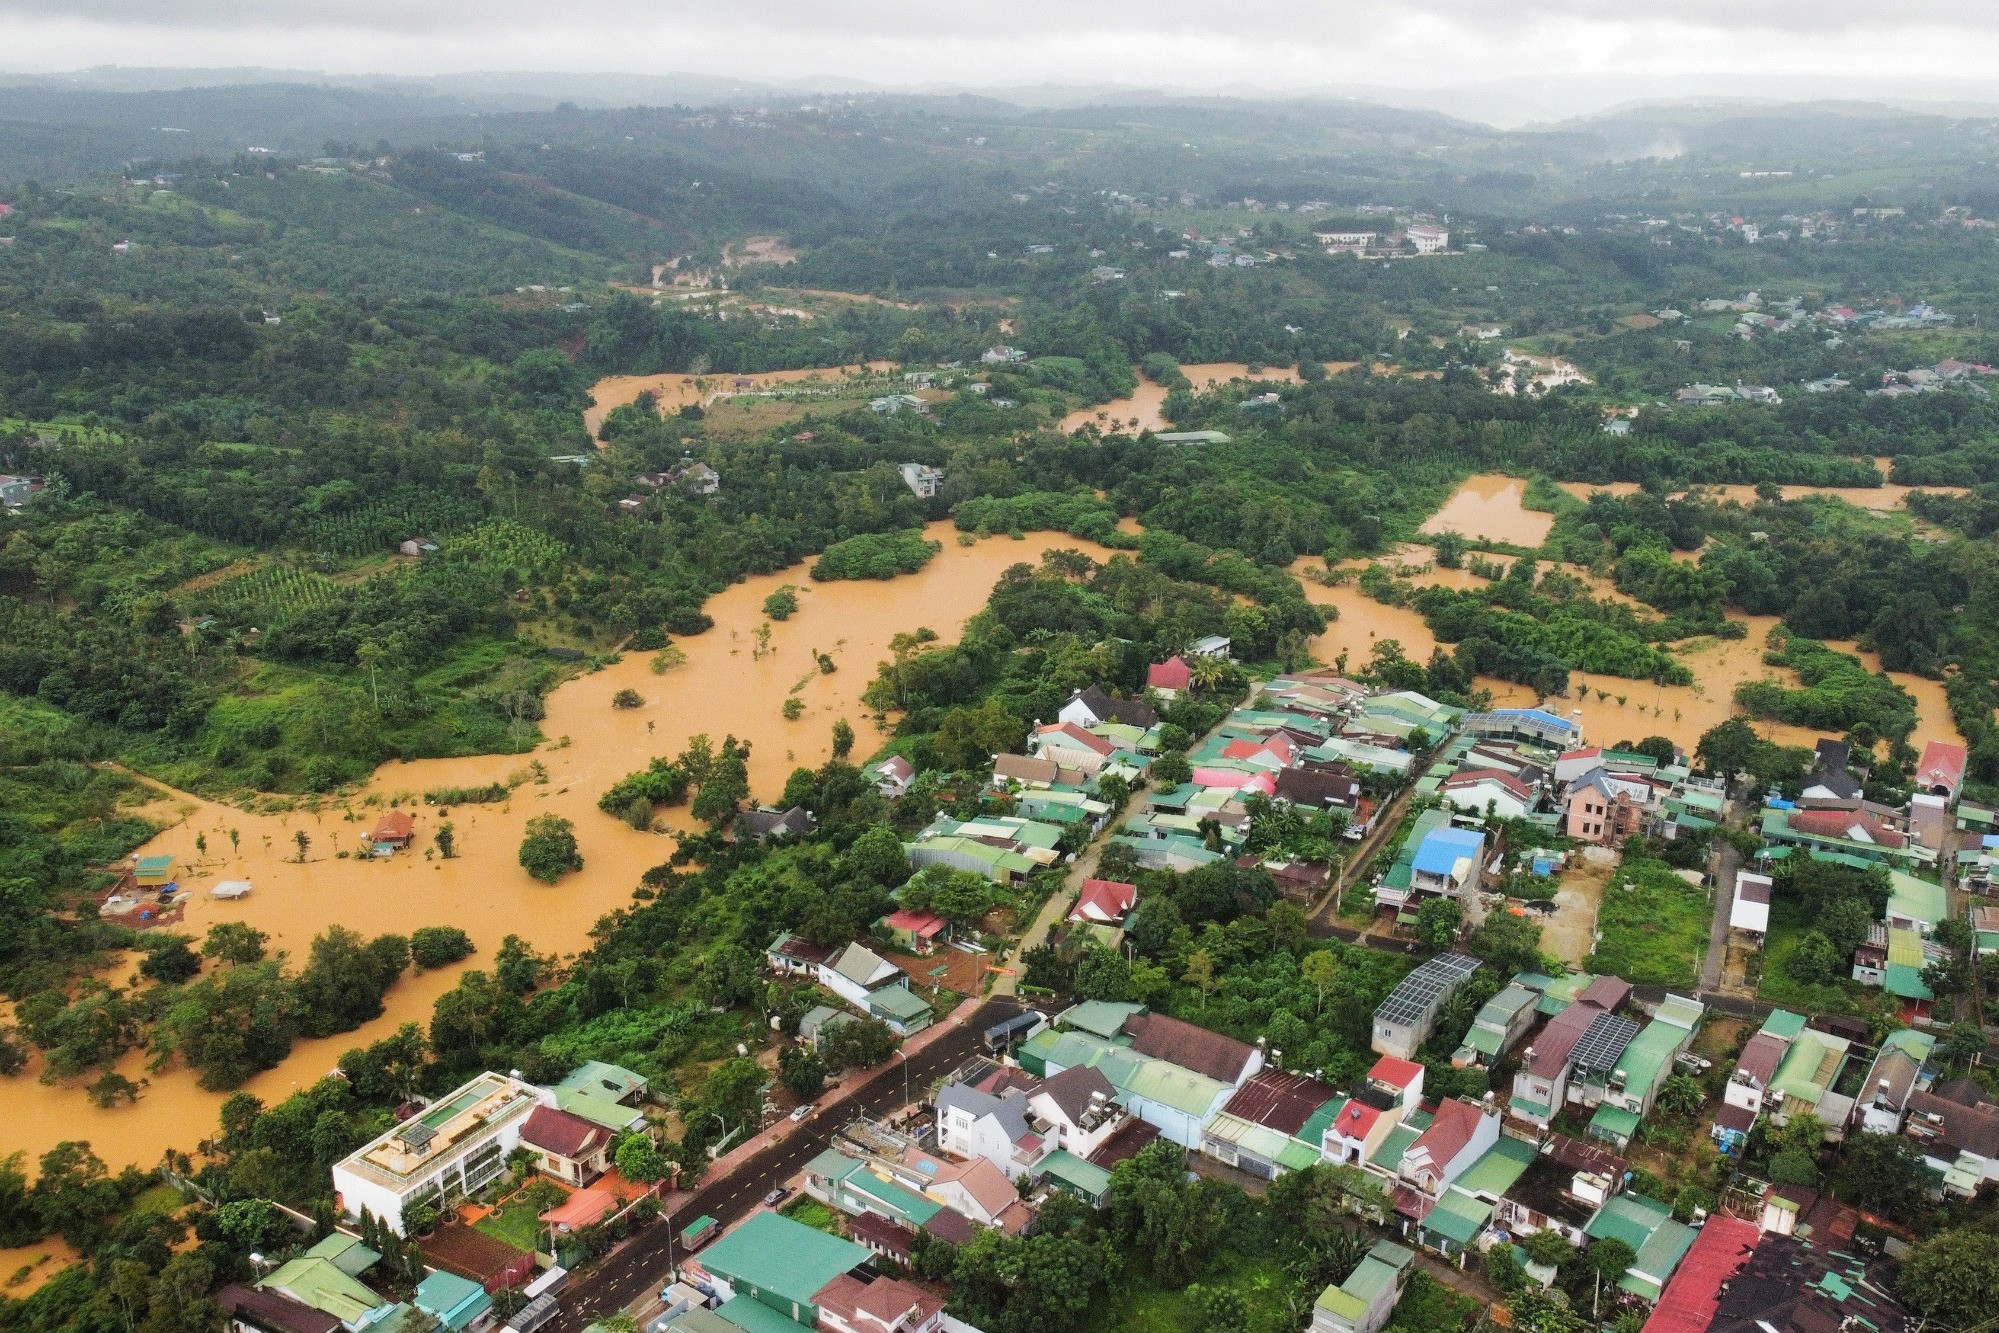 Mưa lớn nhấn chìm hàng ngàn hecta cây trồng ở Đắk Lắk, Đắk Nông